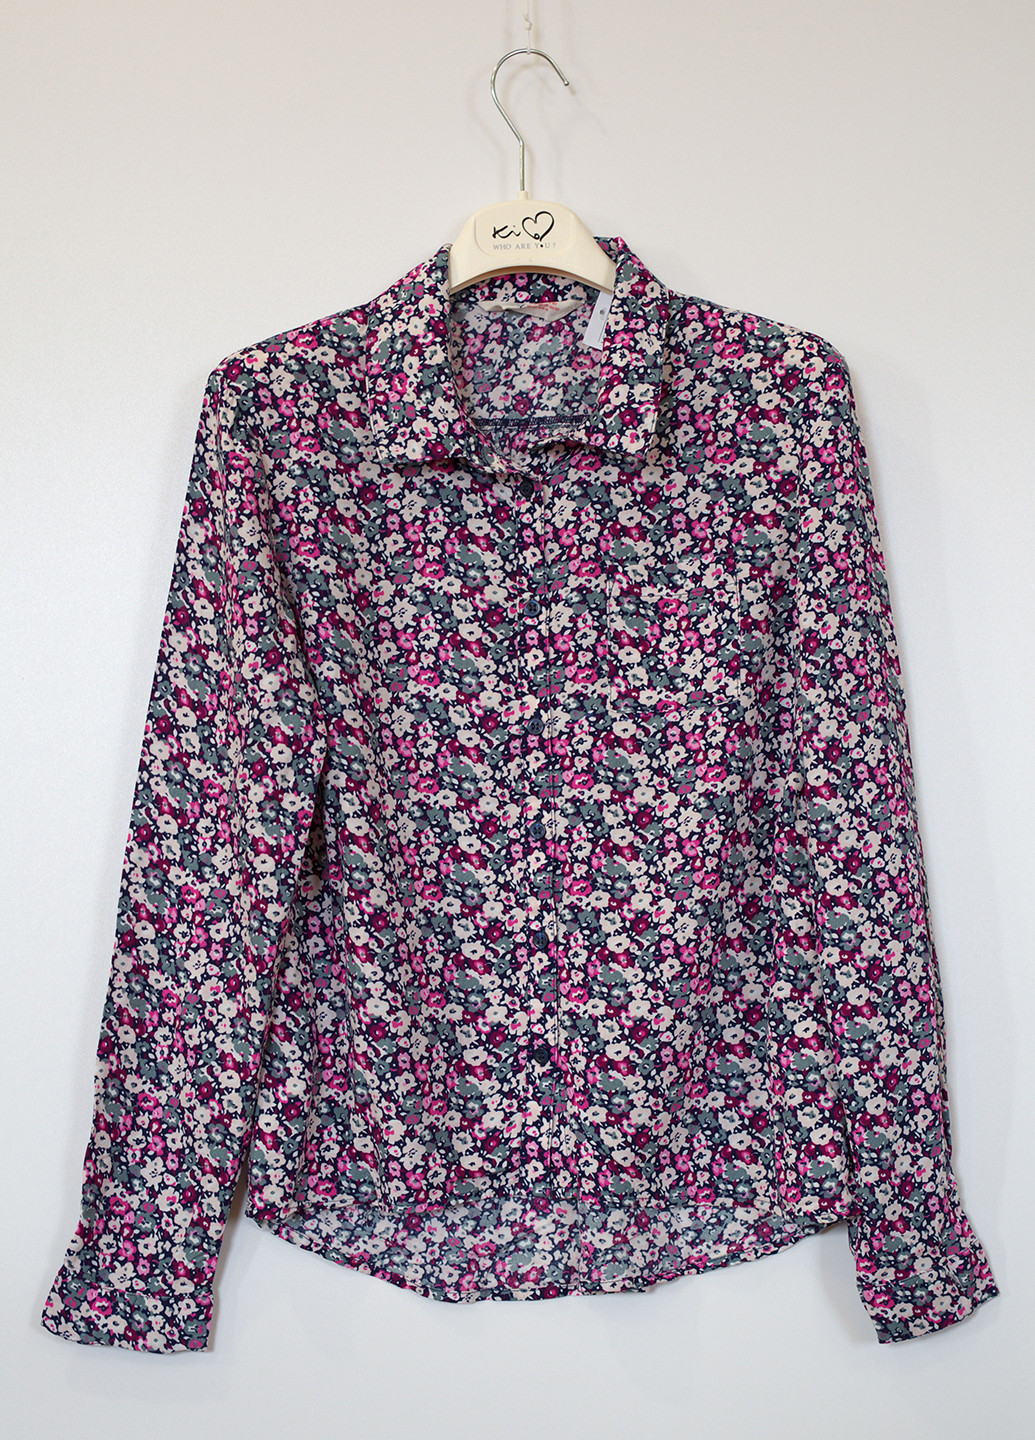 Комбинированная цветочной расцветки блузка с длинным рукавом H&M демисезонная